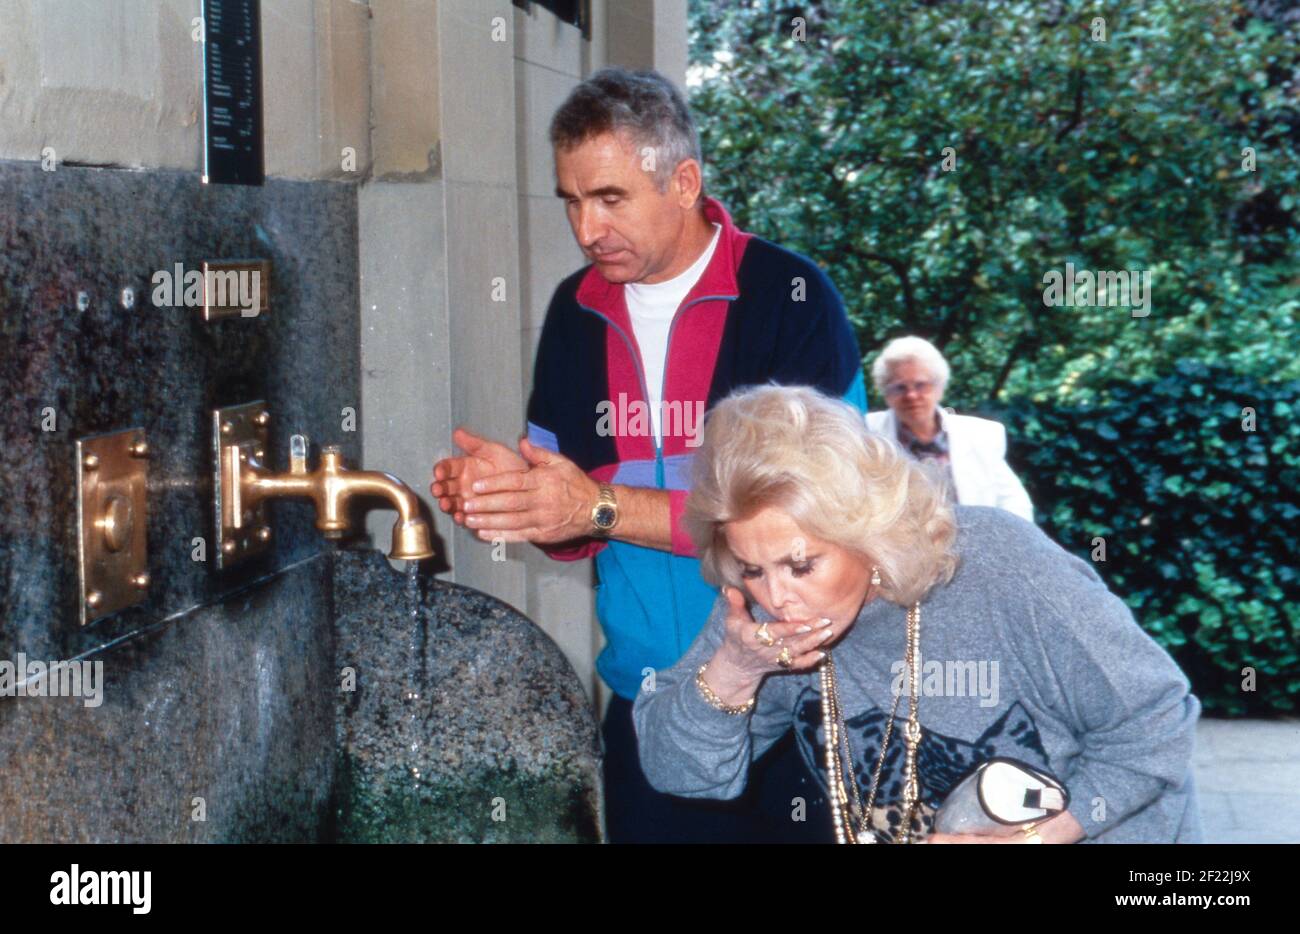 ZSA Zsa Gabor und Ehemann Frederic Prinz von Anhalt nehmen einen Schluck Heilwasser im Rahmen ihrer Aslan Therapie in Bad Kissingen, Deutschland 1992. Stockfoto